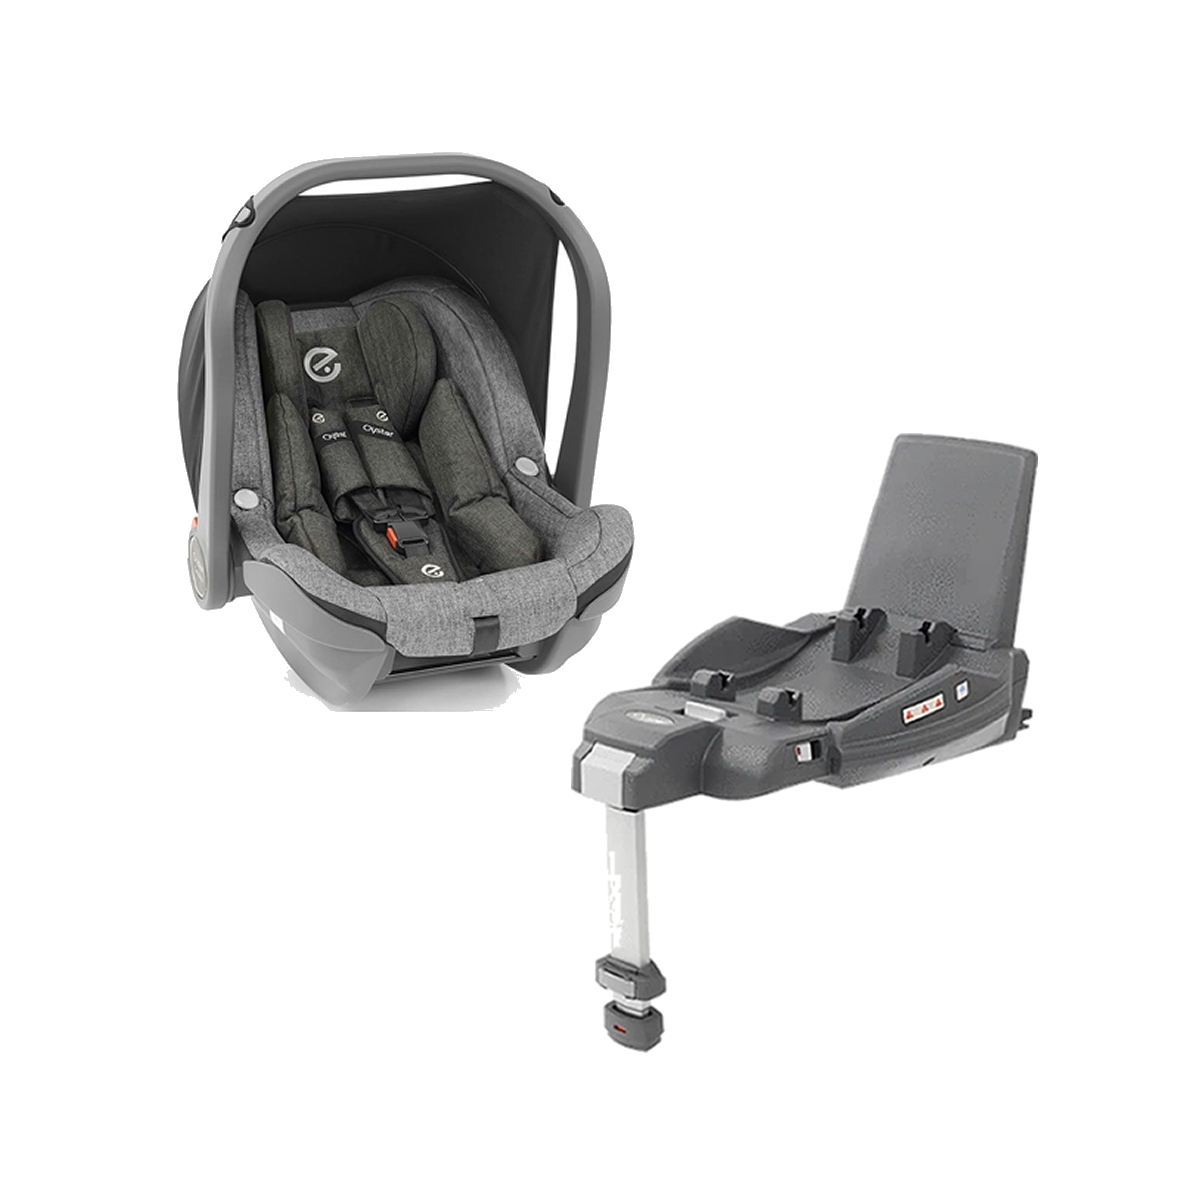 Babystyle Capsule Infant Car Seat & Duofix i-Size Base